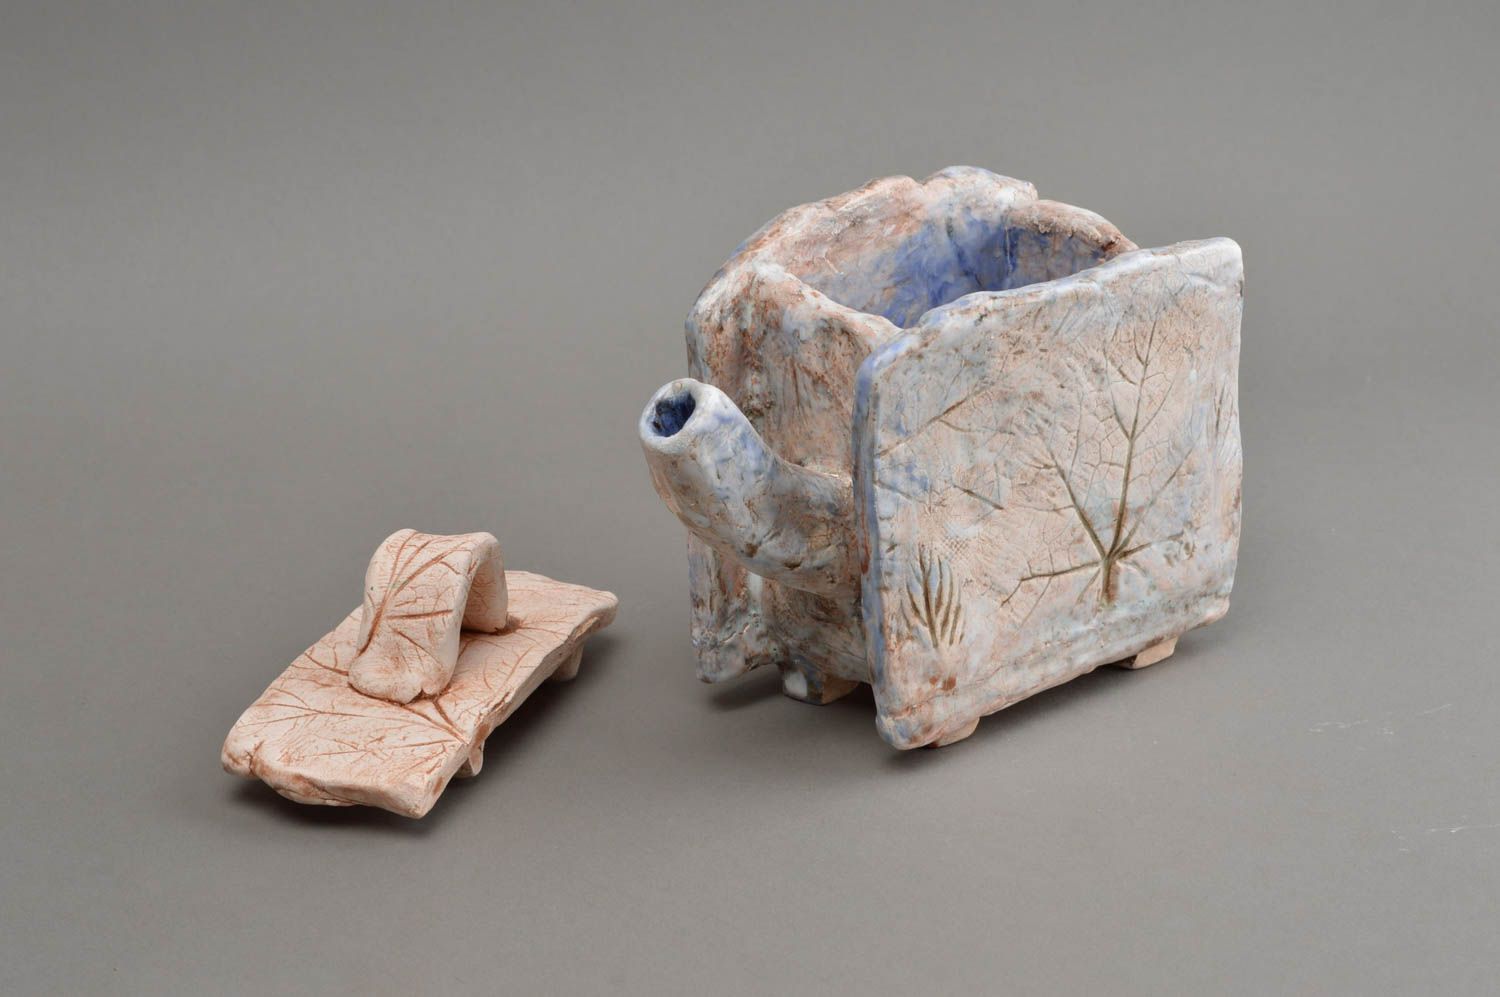 Статуэтка из шамотной глины расписанная глазурью в виде чайника ручной работы фото 2